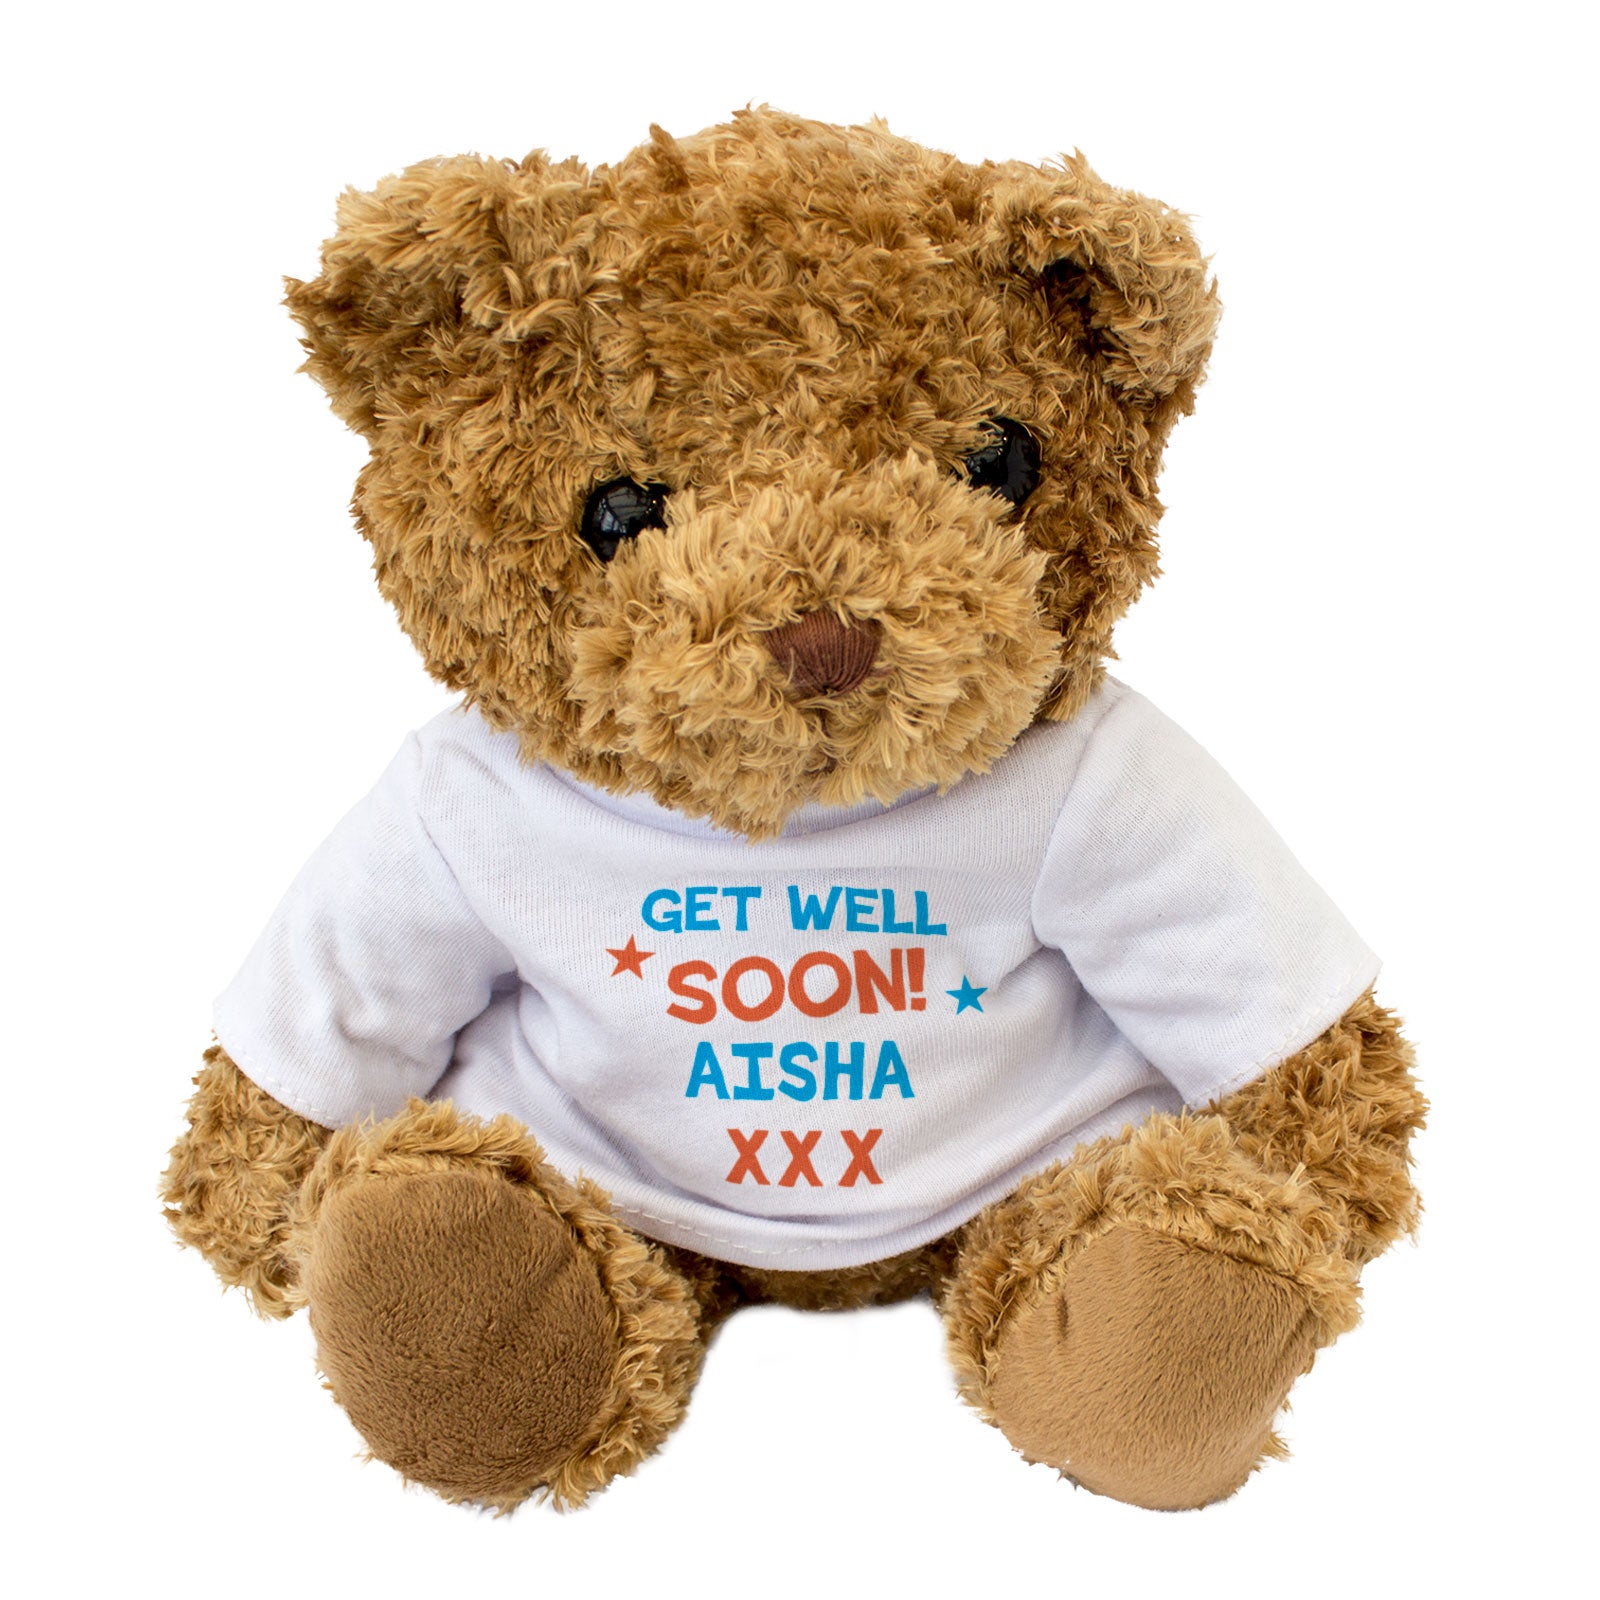 Get Well Soon Aisha - Teddy Bear